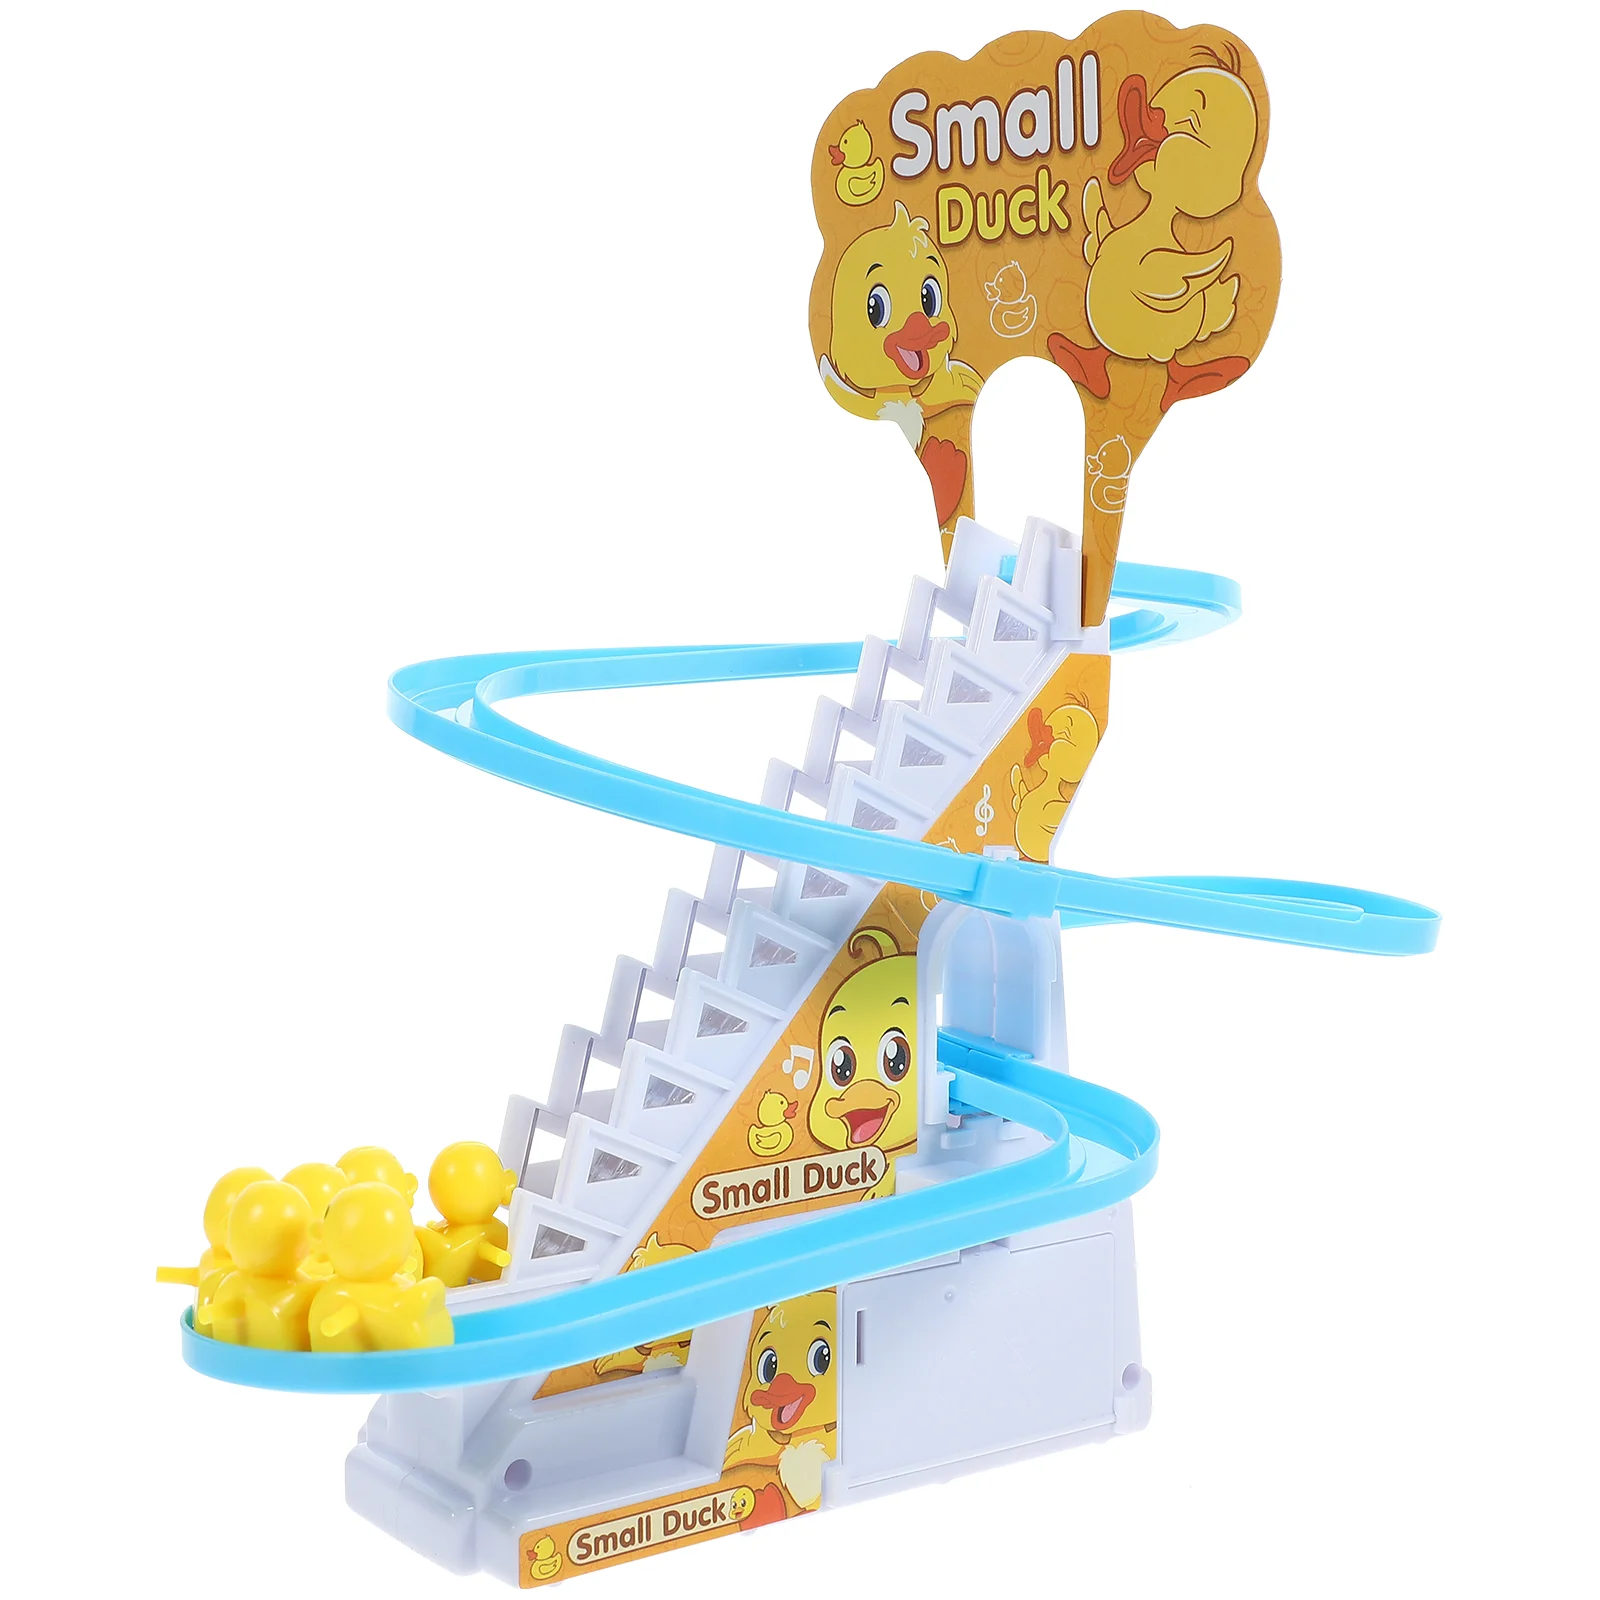 

Музыкальный Забавный пазл лестница игрушка для детей привлекательная игрушка для детей малышей детское образование